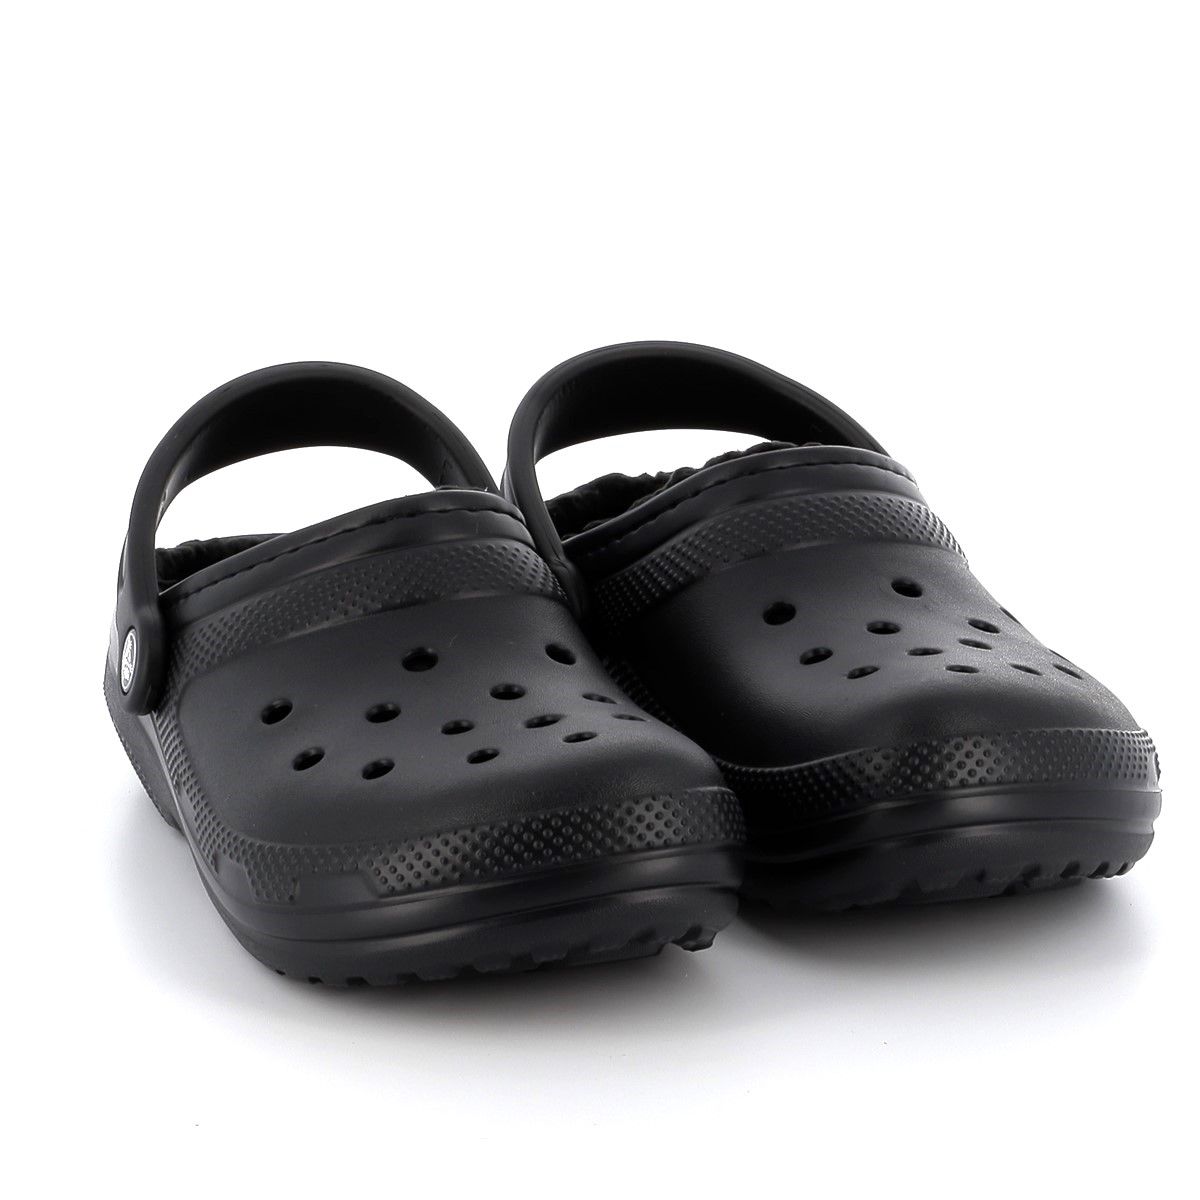 Σαμπό Ανατομικό Crocs Classic Lined Clog Χρώματος Μαύρο 203591-060